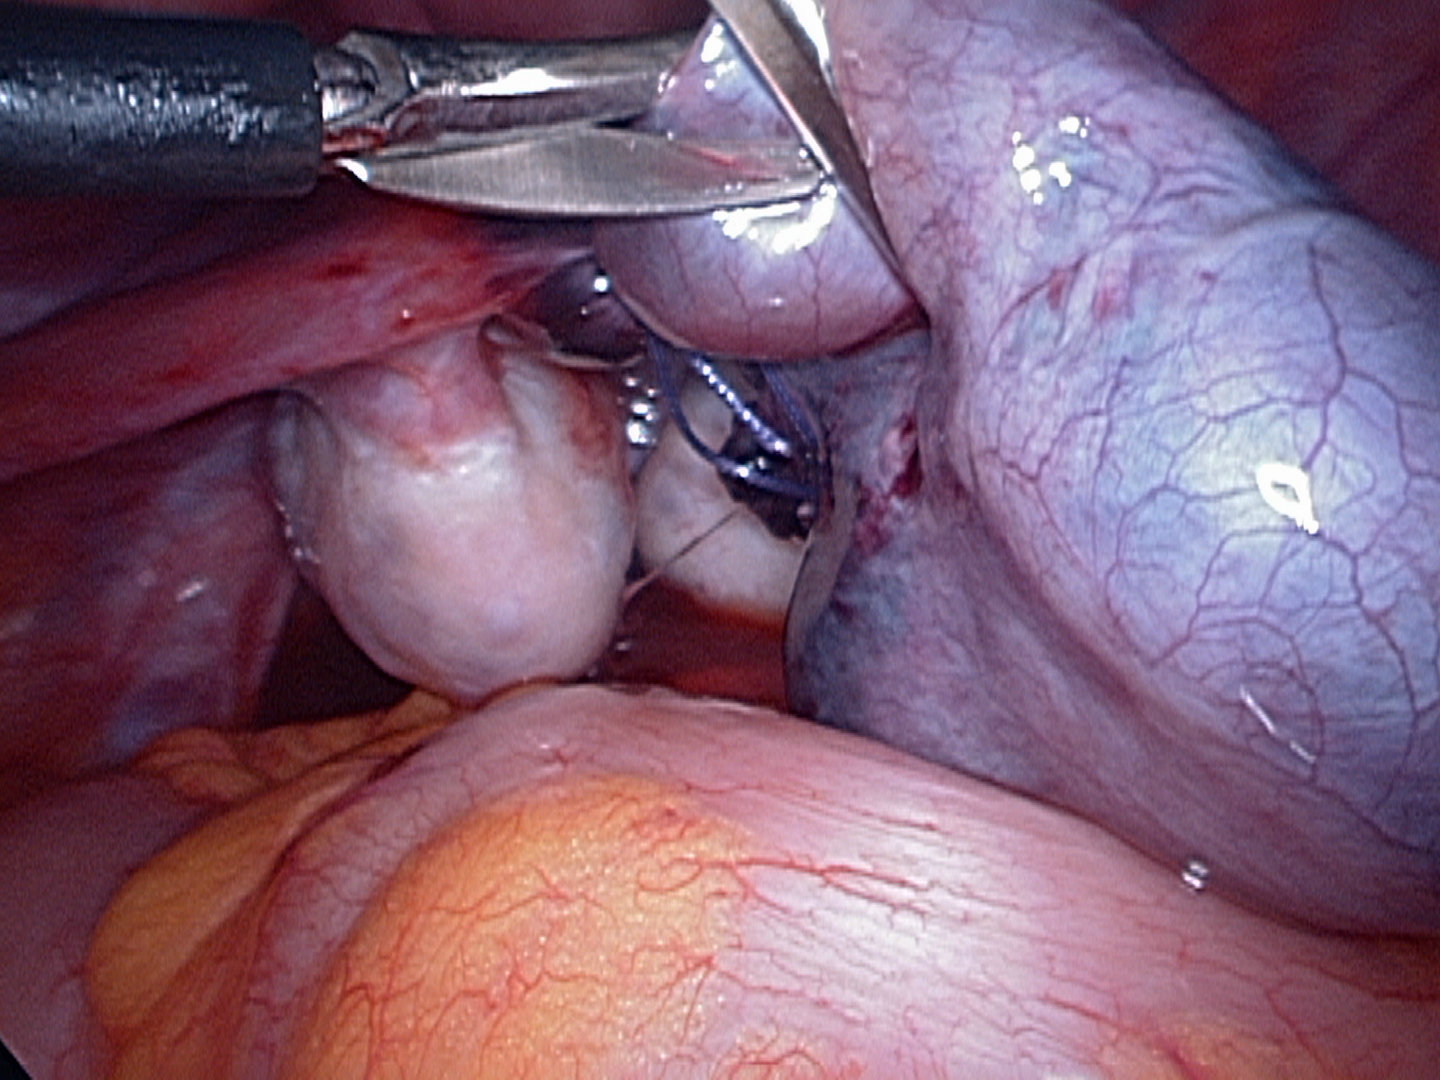 Cutting twisted tied fallopian tube